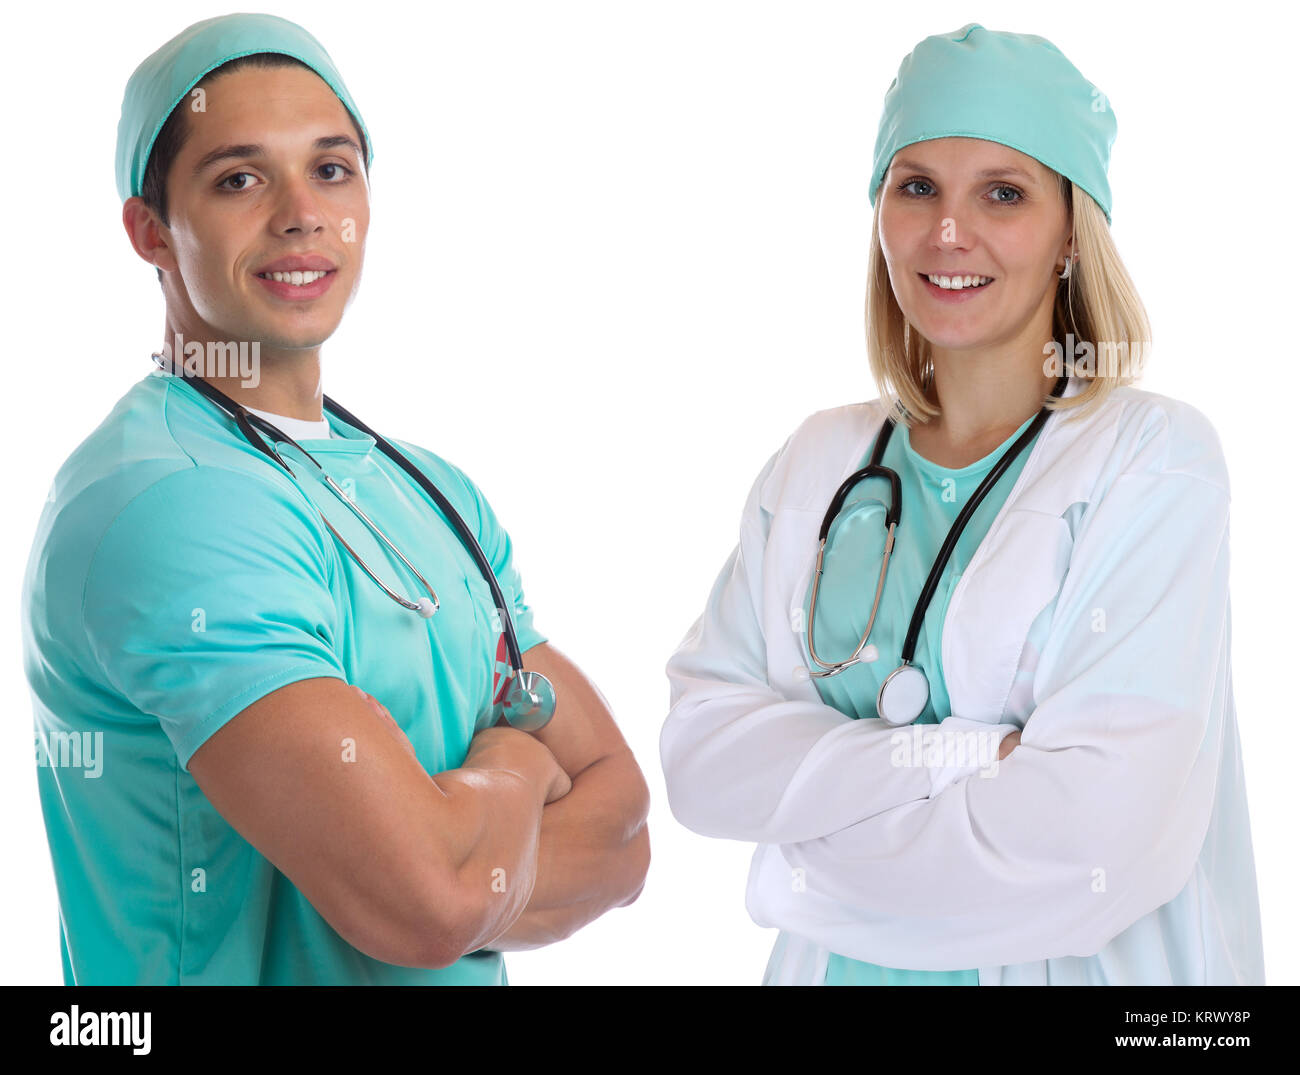 Doktor Arzt Team Ärzte Ärztin Krankenschwester Beruf freigestellt vor einem weissen Hintergrund Foto de stock